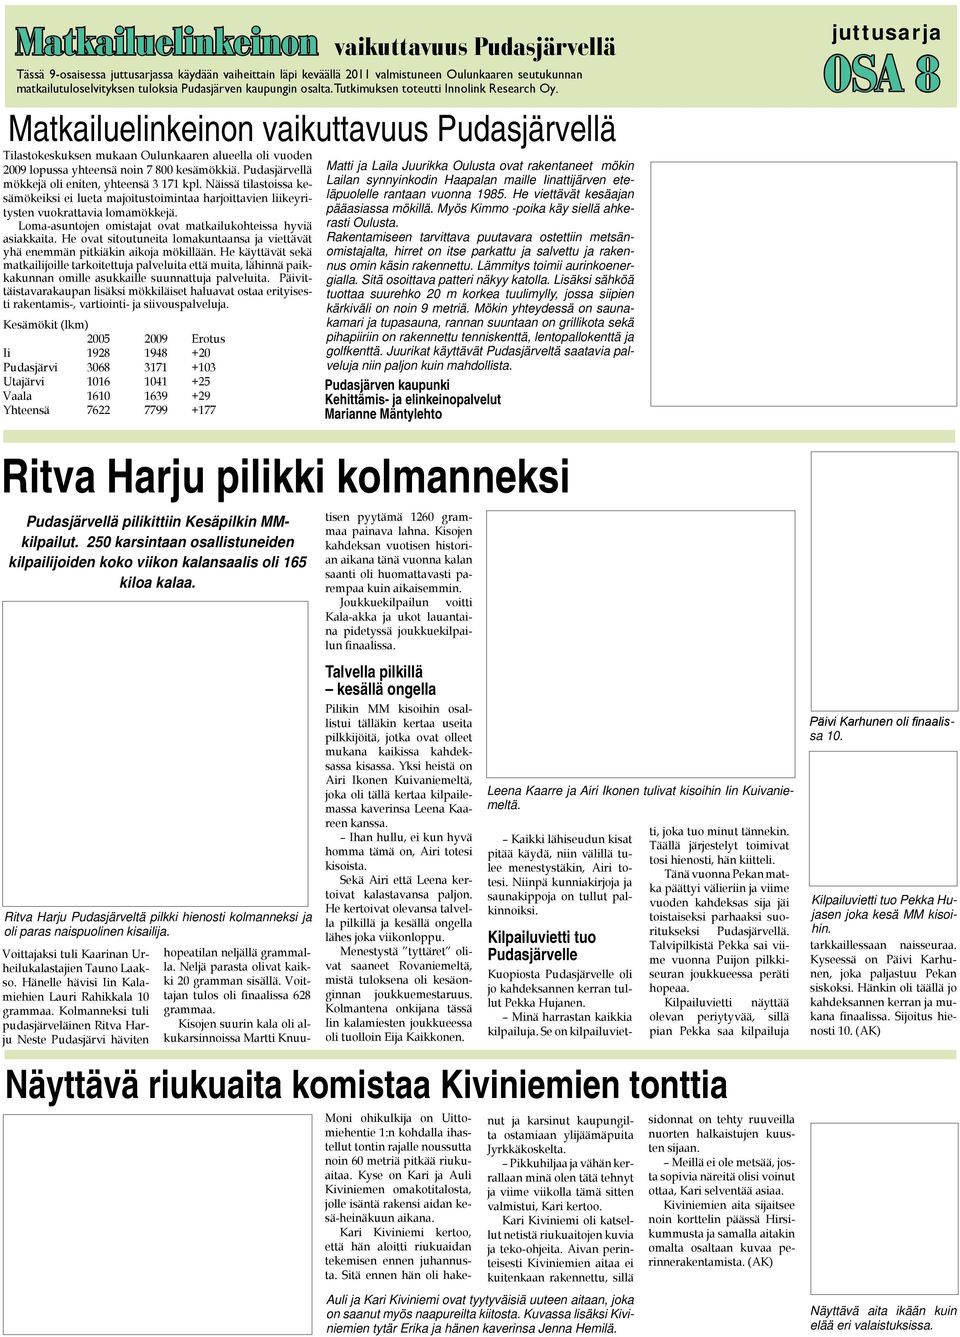 Voittajaksi tuli Kaarinan Urheilukalastajien Tauno Laakso. Hänelle hävisi Iin Kalamiehien Lauri Rahikkala 10 grammaa.